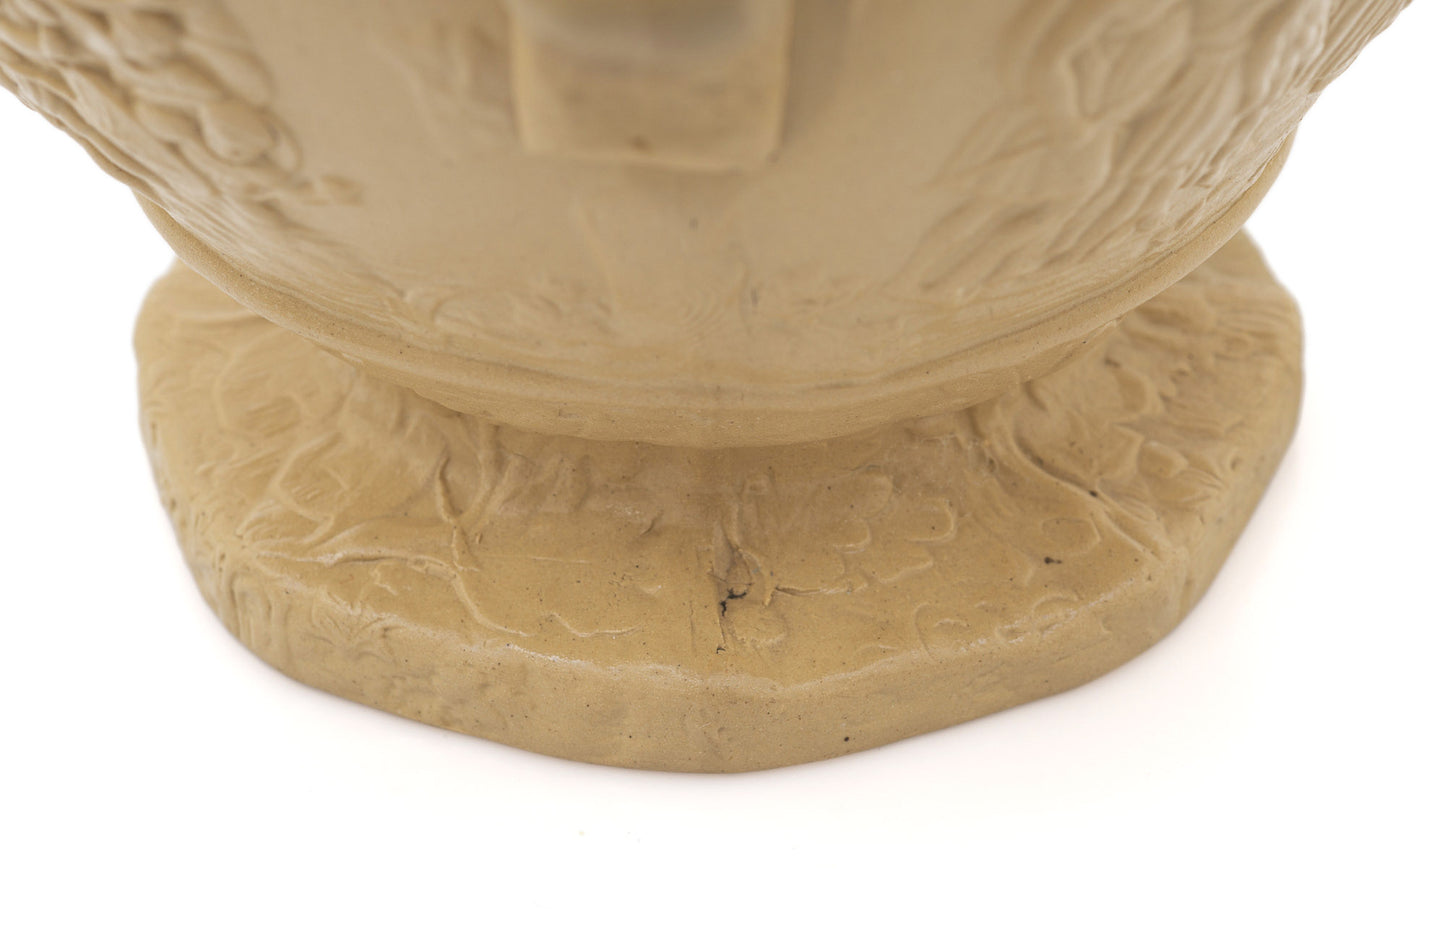 Charles Meigh Antique Julius Caesar & Boudicca Moulded Stoneware Jug c1839 (Code 2432)